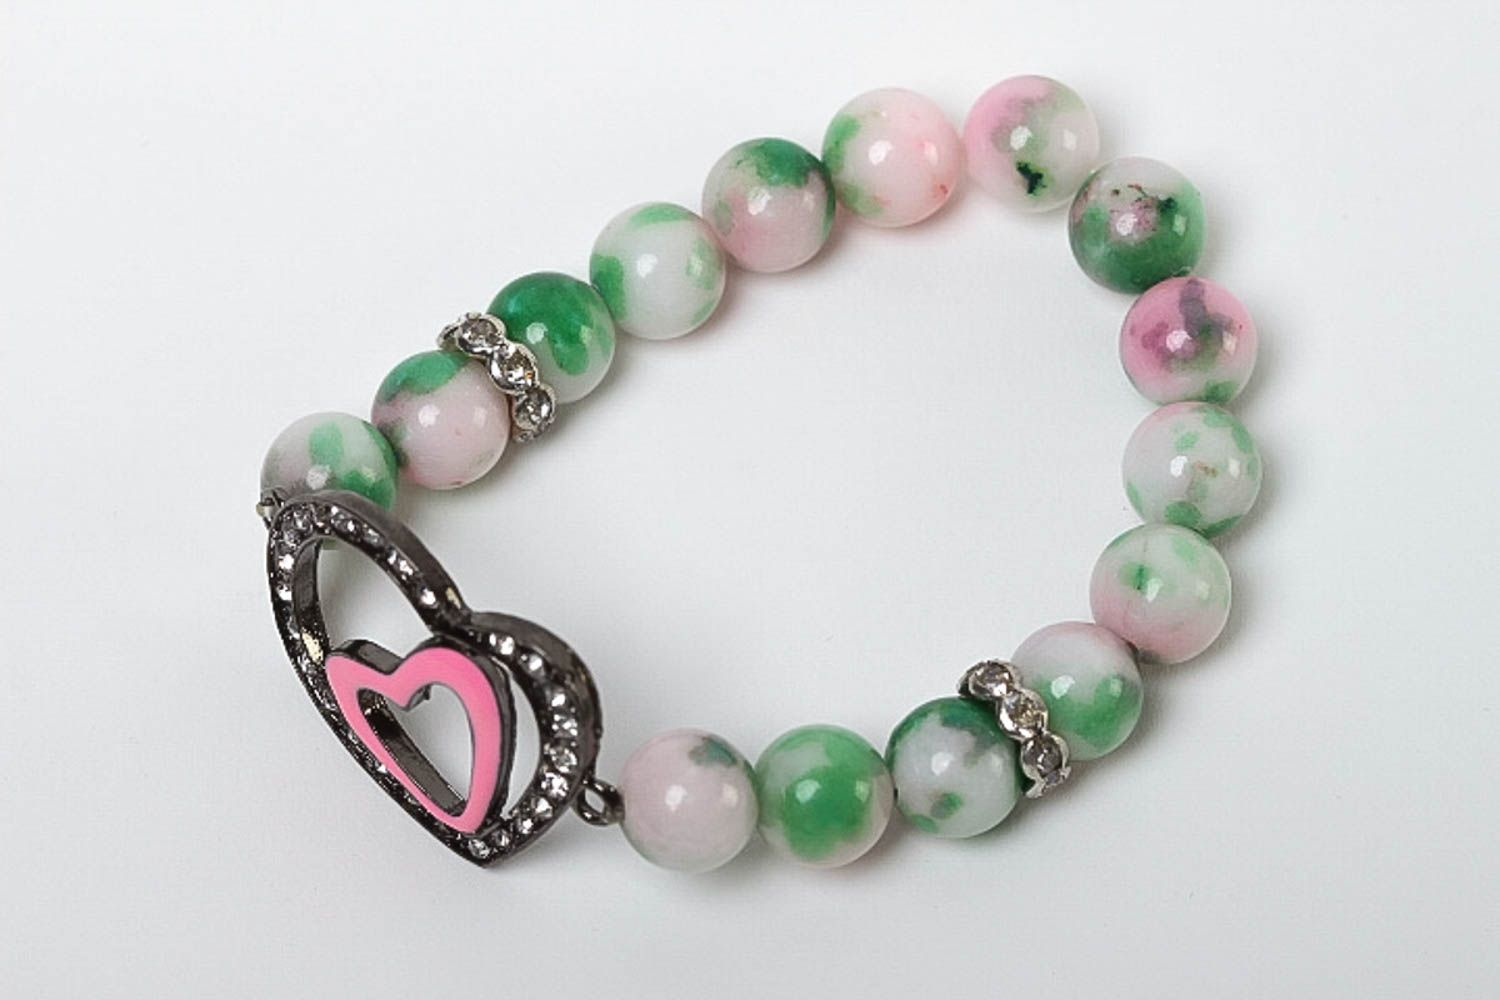 Handmade bracelet charm bracelet bead jewelry gemstone jewelry gifts for her photo 2